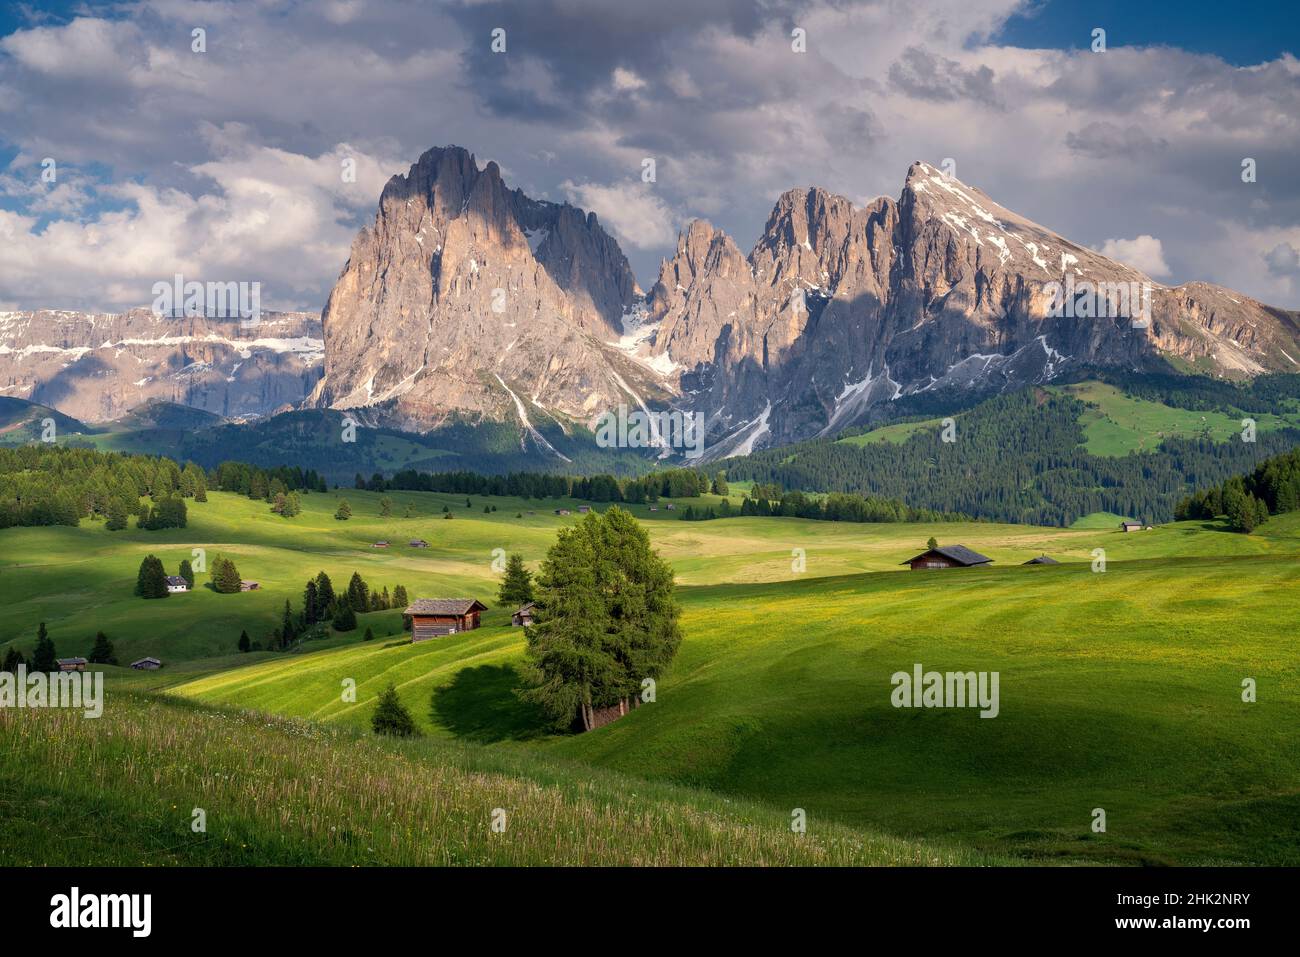 Europe, Italy, South Tirol. Alpine meadows with the Sasso Lungo and Sasso Piatto Mountains. Stock Photo